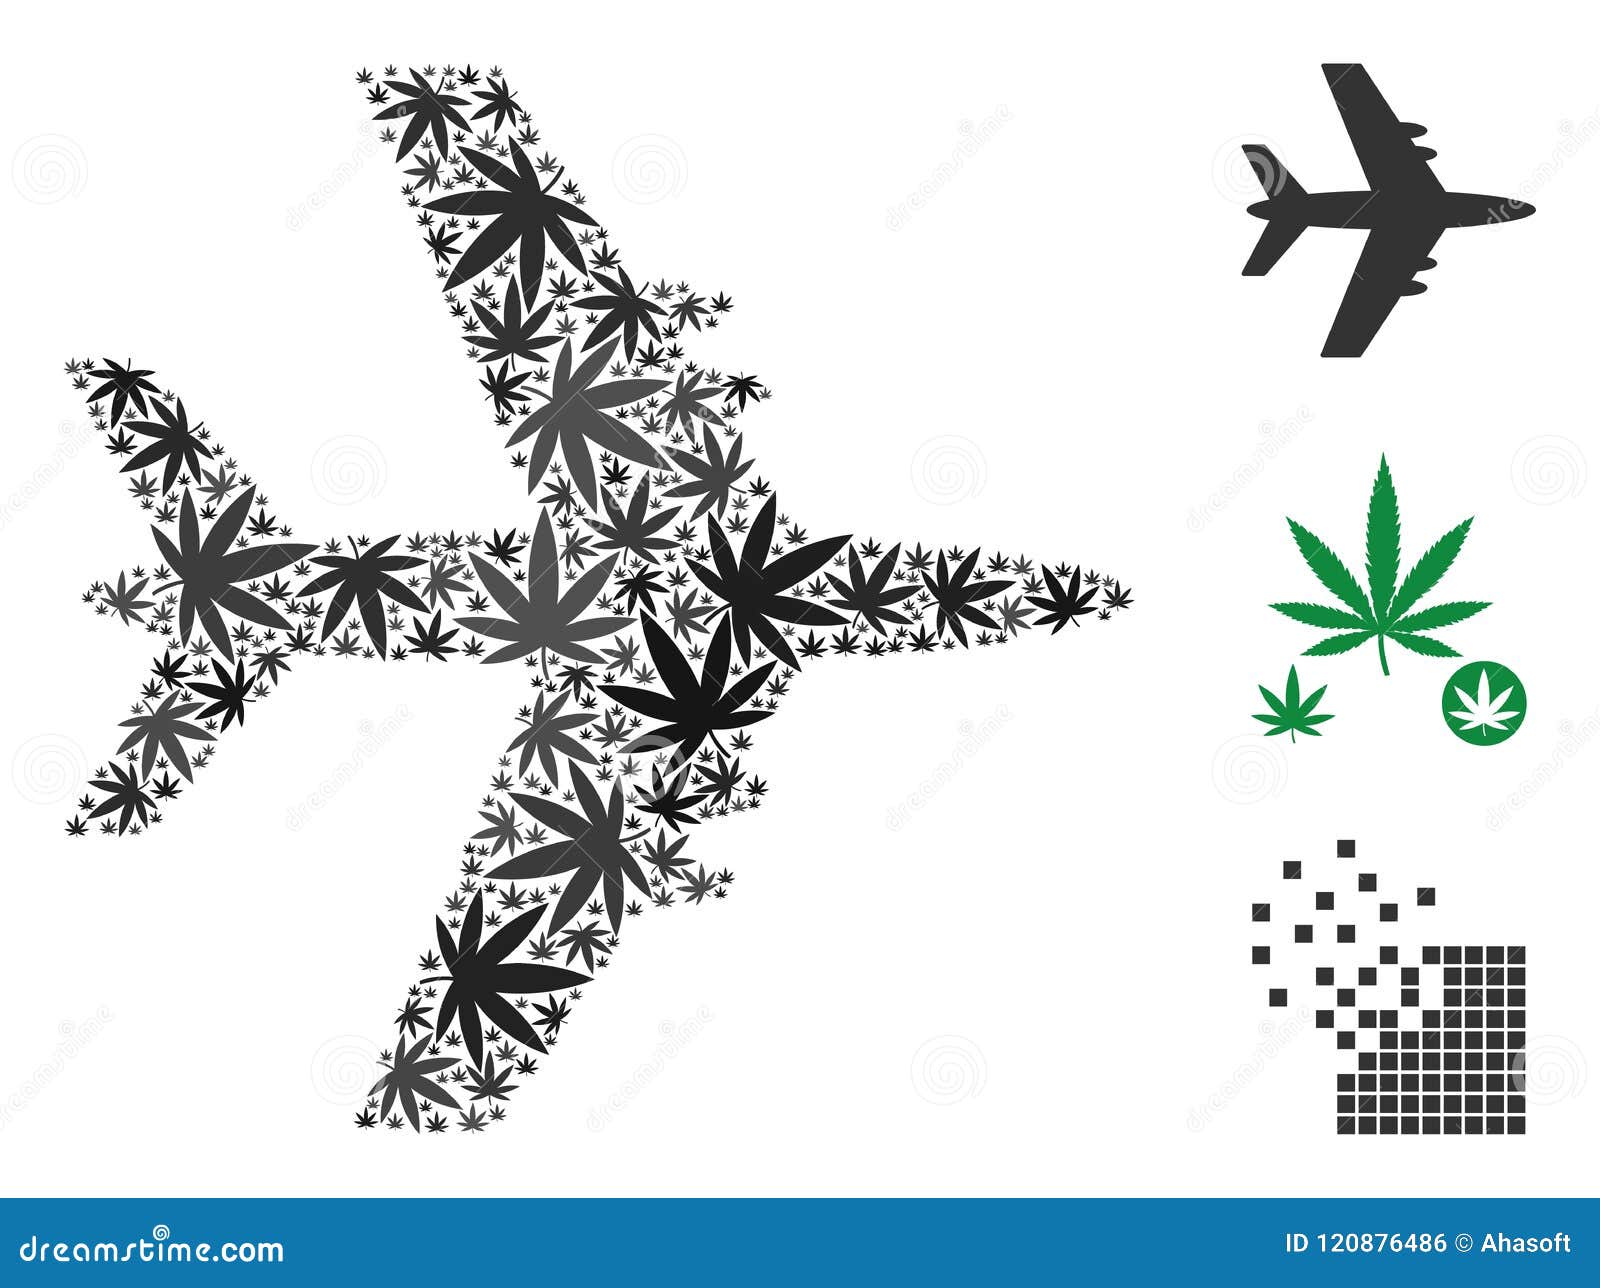 Самолет марихуаной элитная конопля